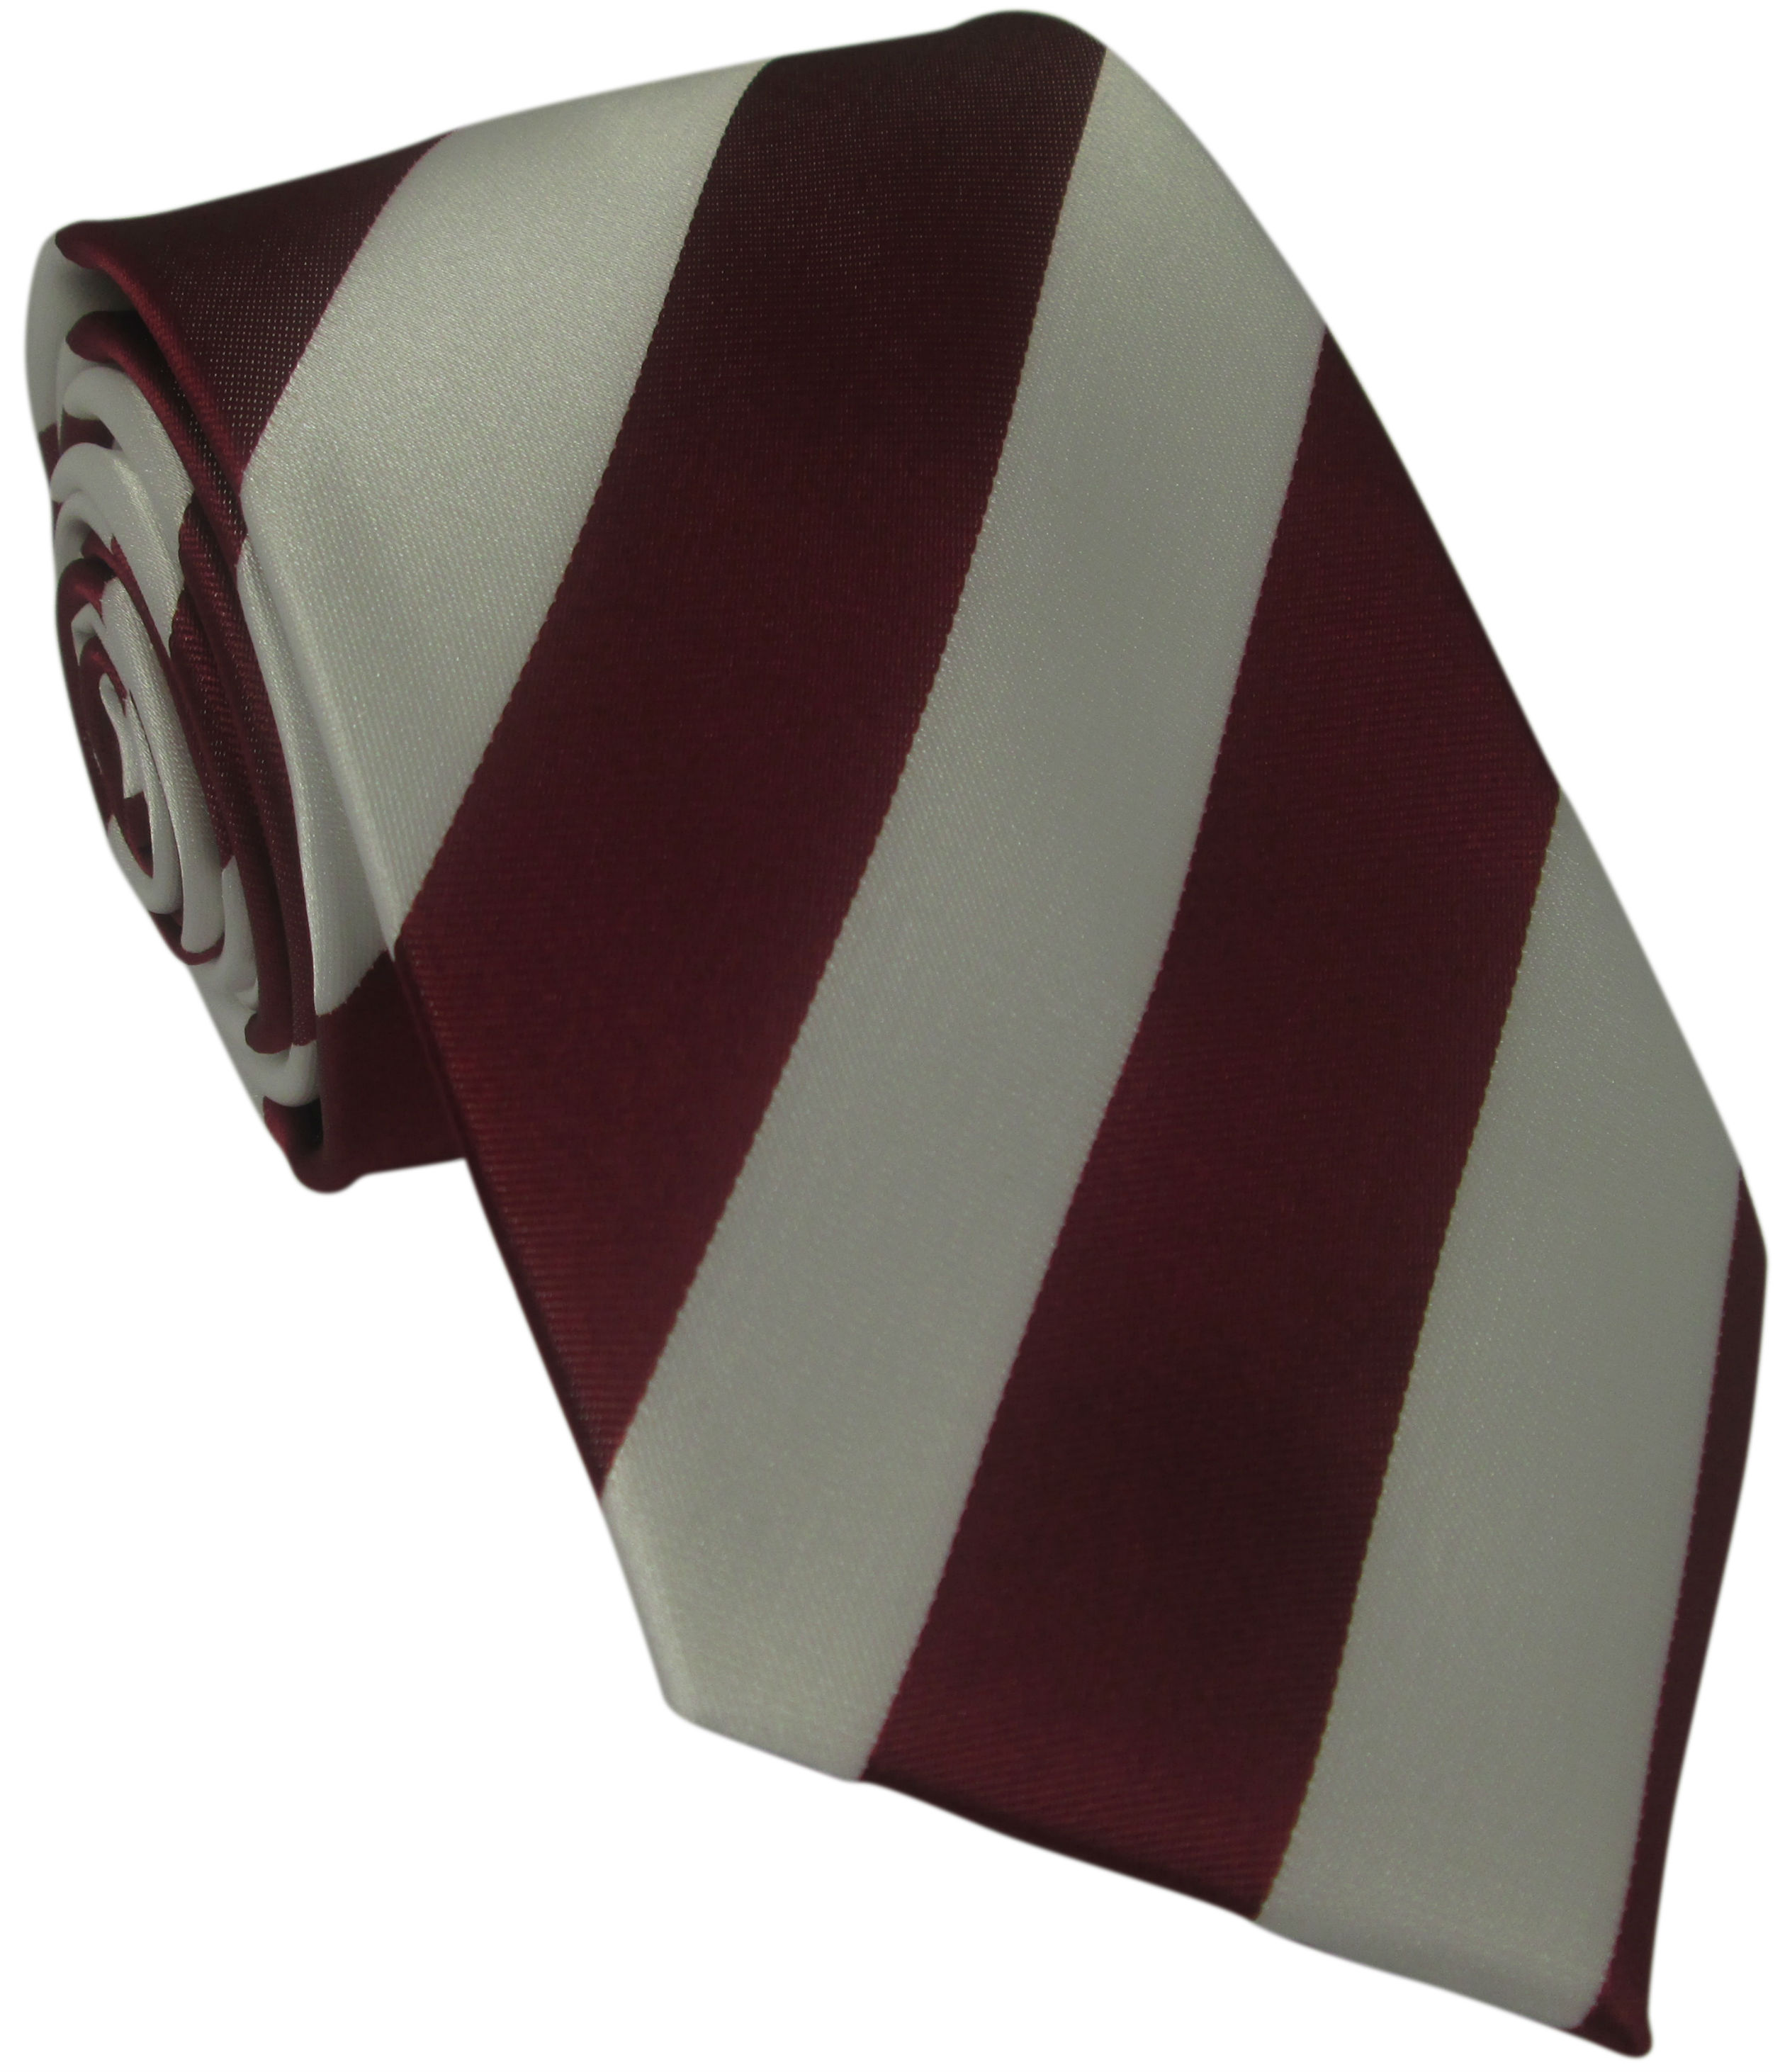 Dark Red and White Striped Silk Tie